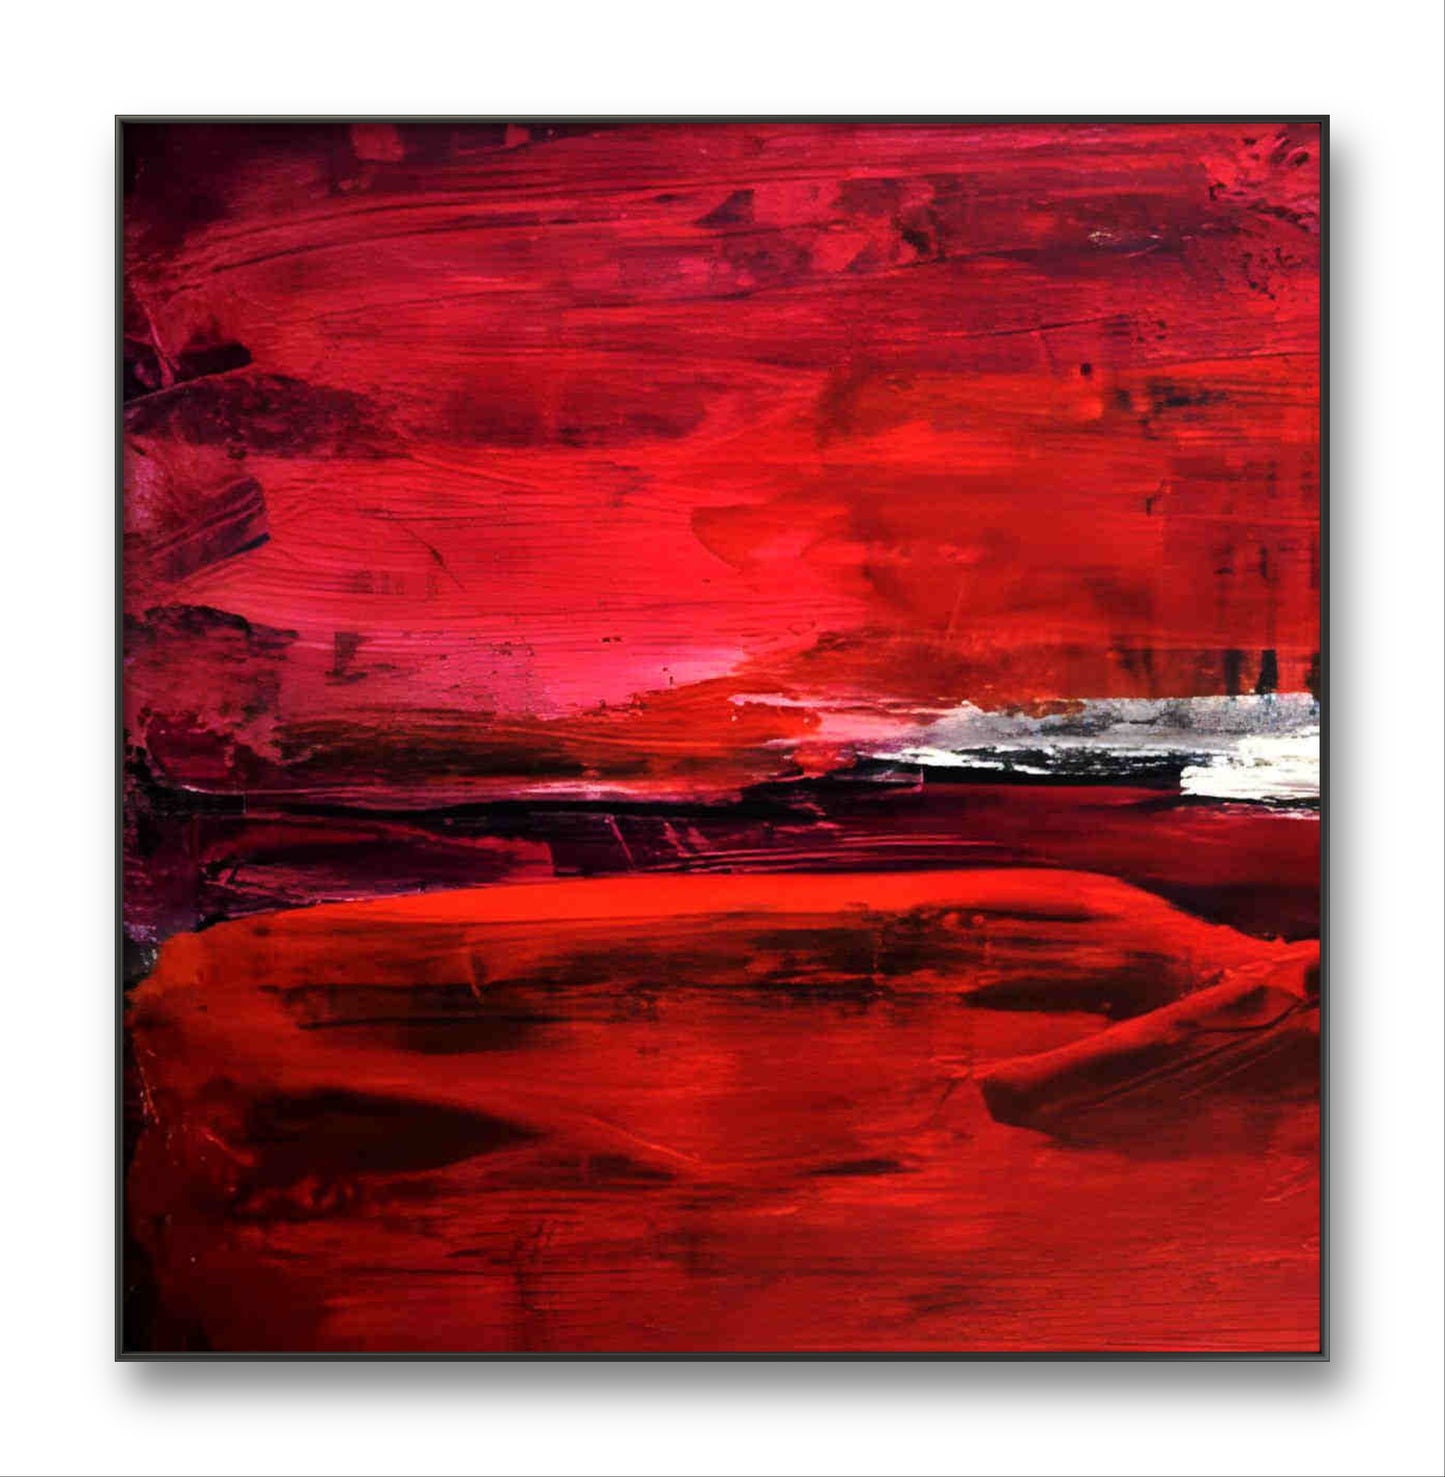 Auftragskunst, abstrakte Bilder, Liebe in Farbe - Ein kraftvolles und dynamisches Gemälde in intensiven Rottönen,abstrakte-auftragsmalerei-1, abstrakte Bilder kaufen ,